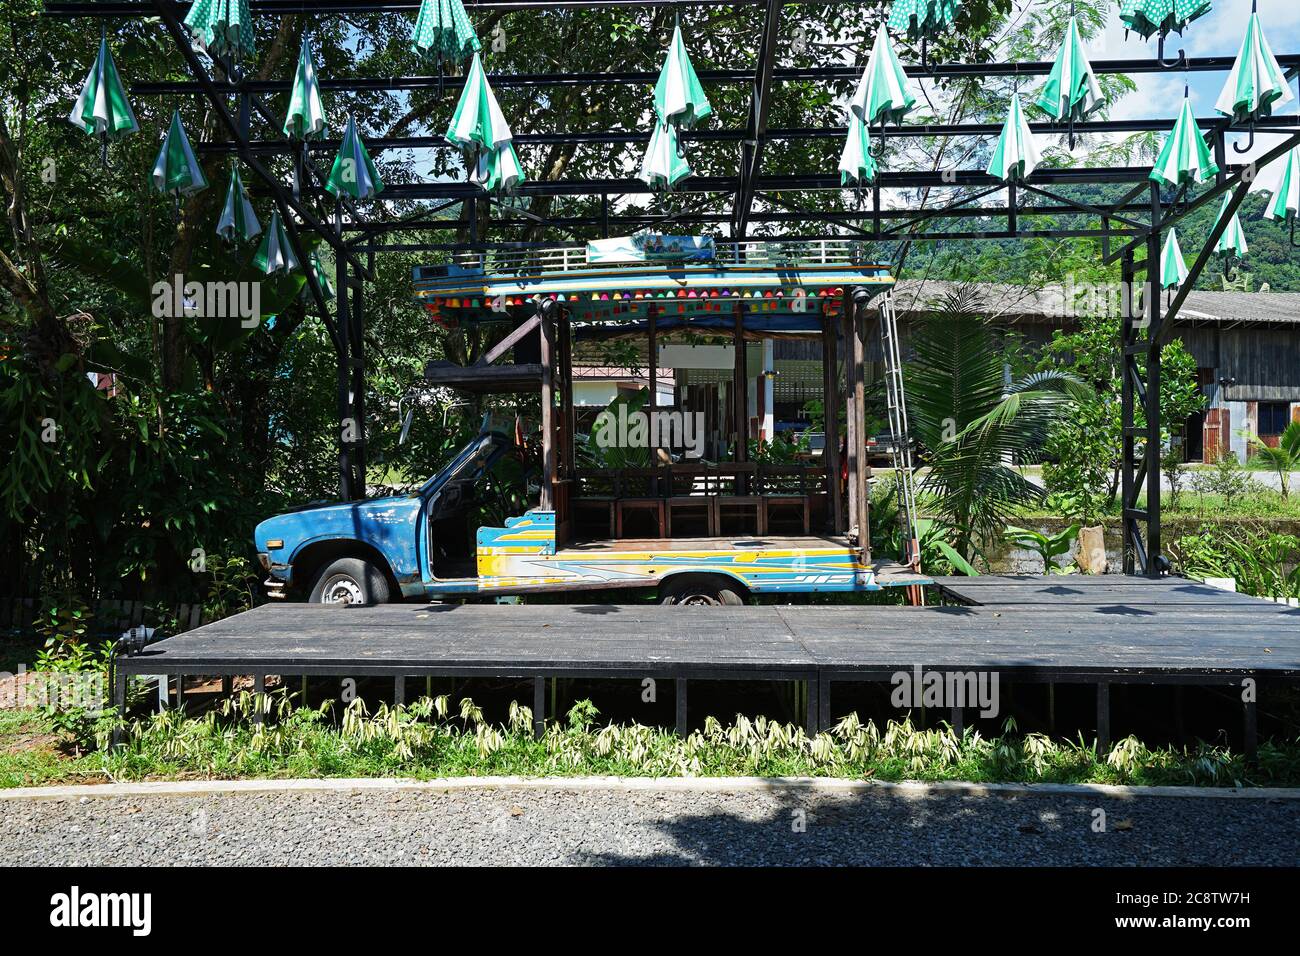 Antiguo escenario de madera en el restaurante local y café decorado con muebles de época, paraguas de colores y clásico carro de camiones - Phang Nga, Tailandia Foto de stock